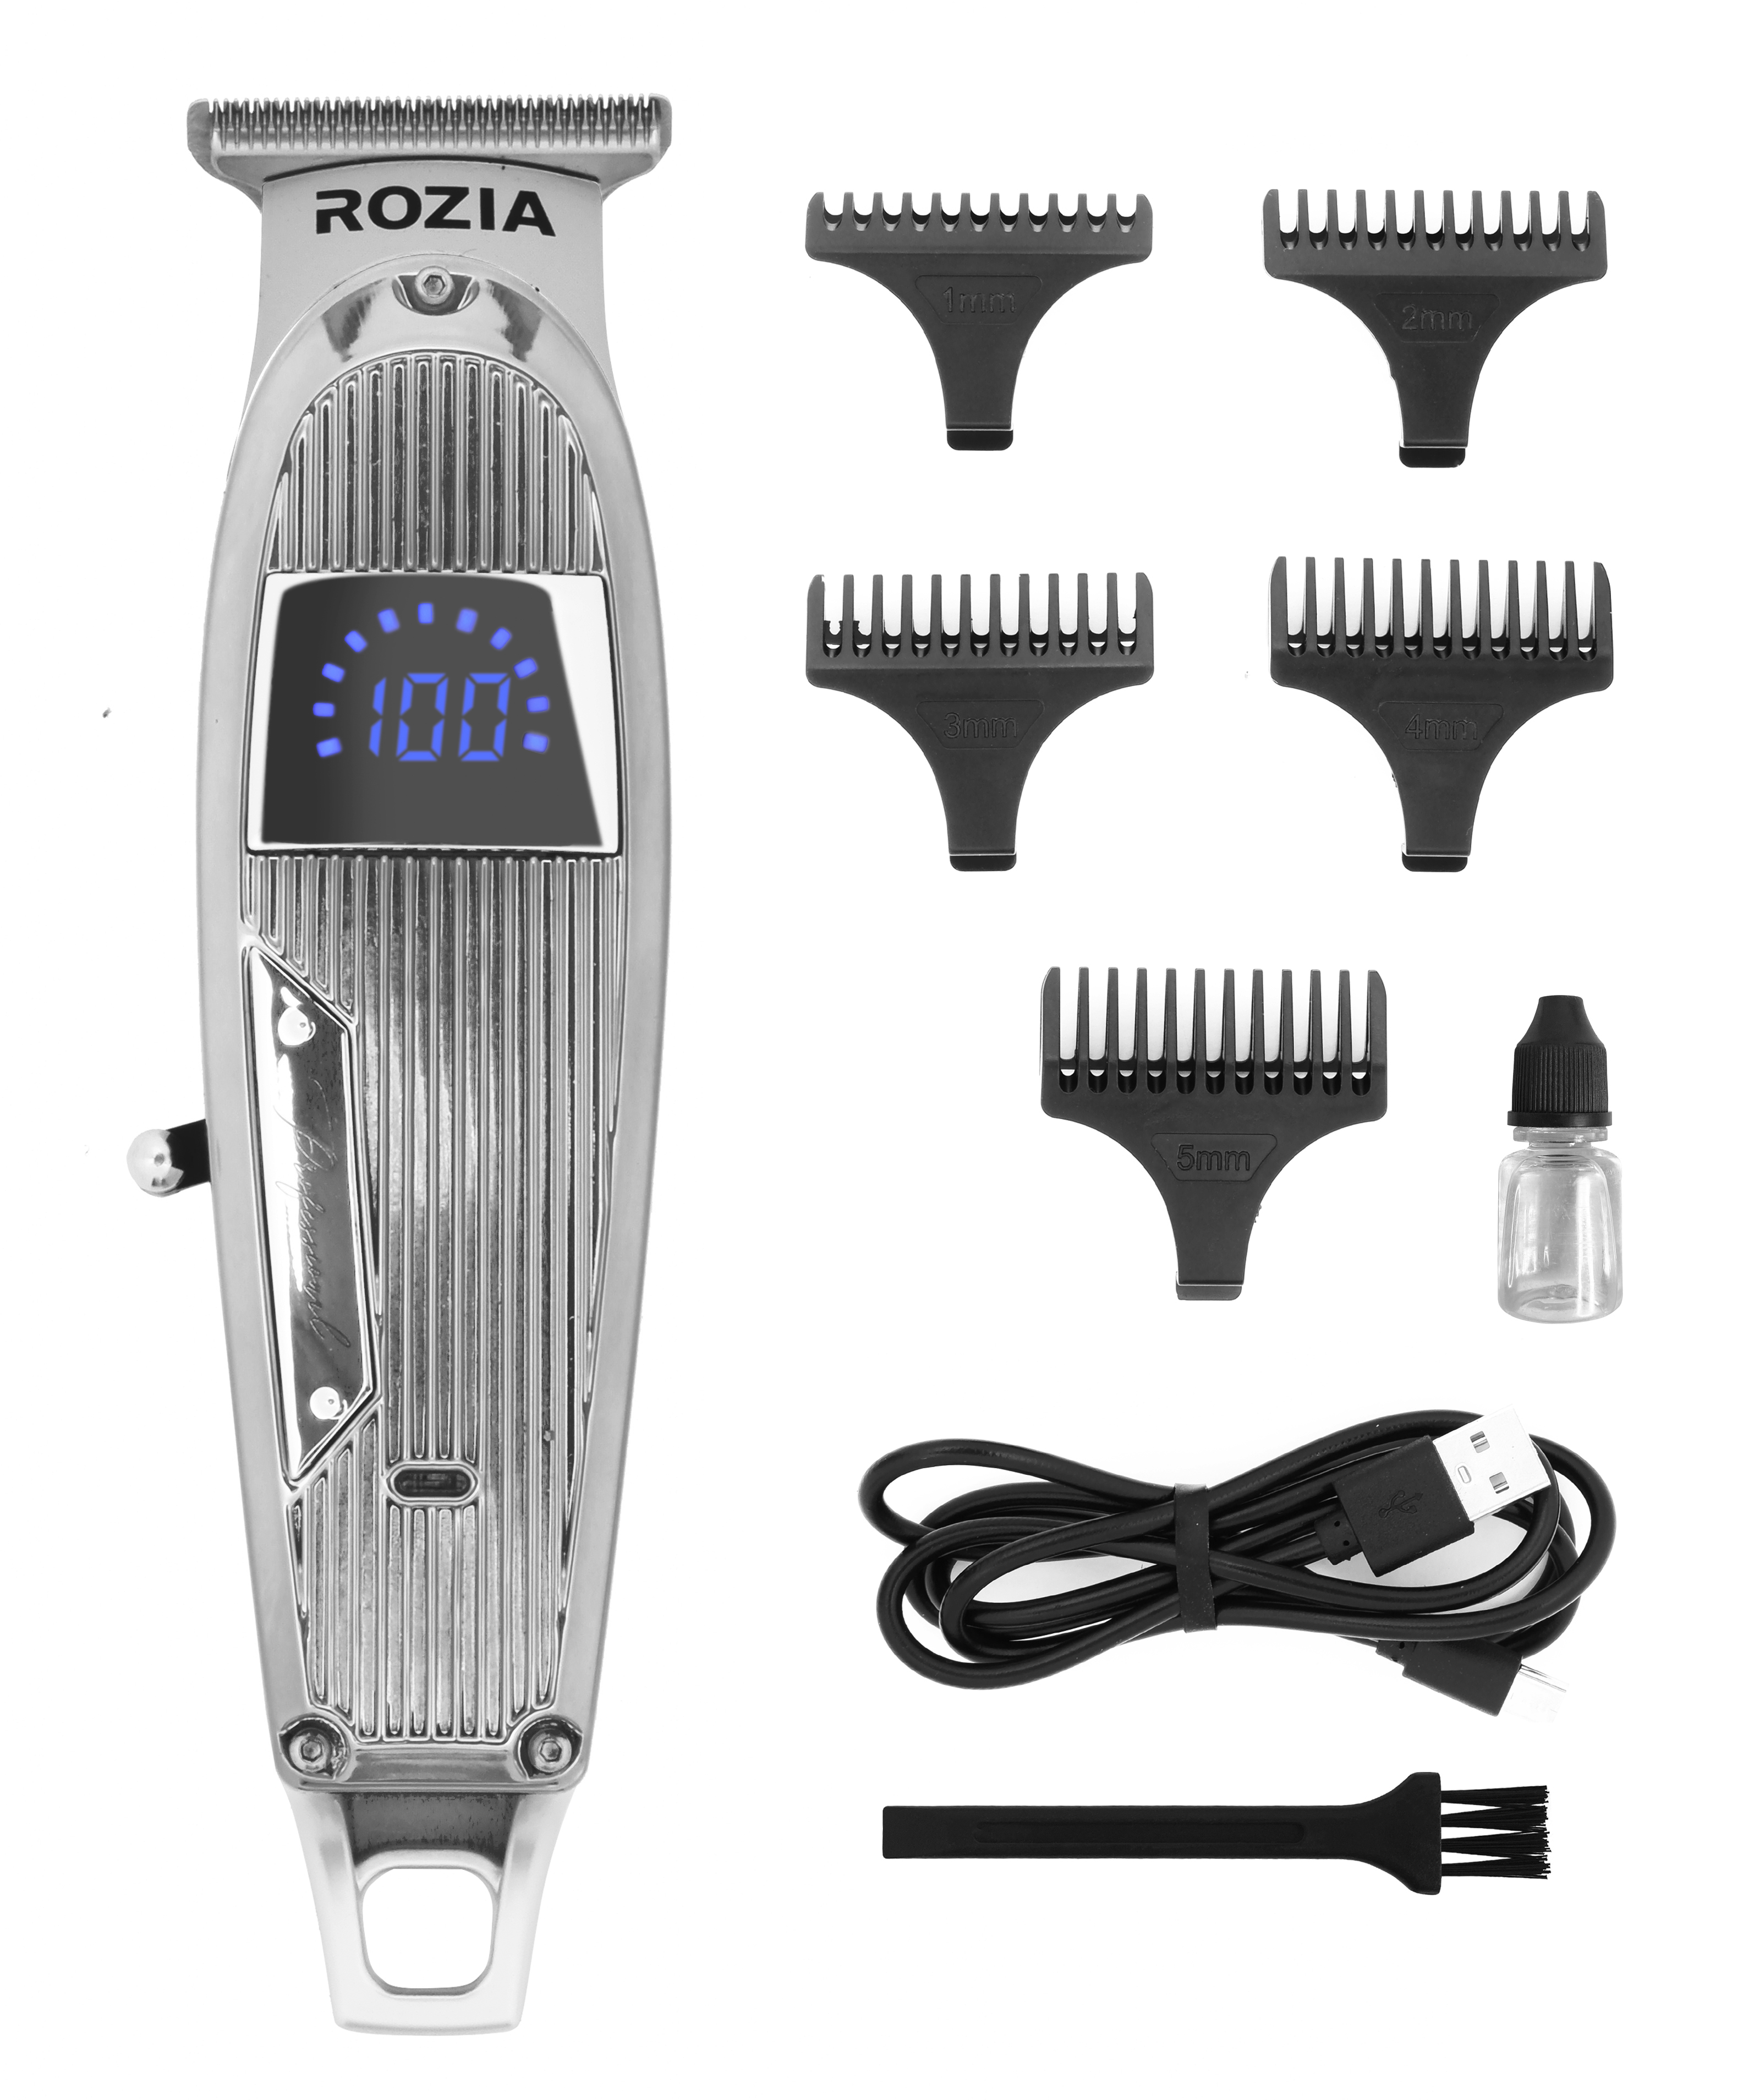 Машинка для стрижки волос Rozia HQ-321 серебристая машинка для стрижки волос rozia hq 2226 серебристая